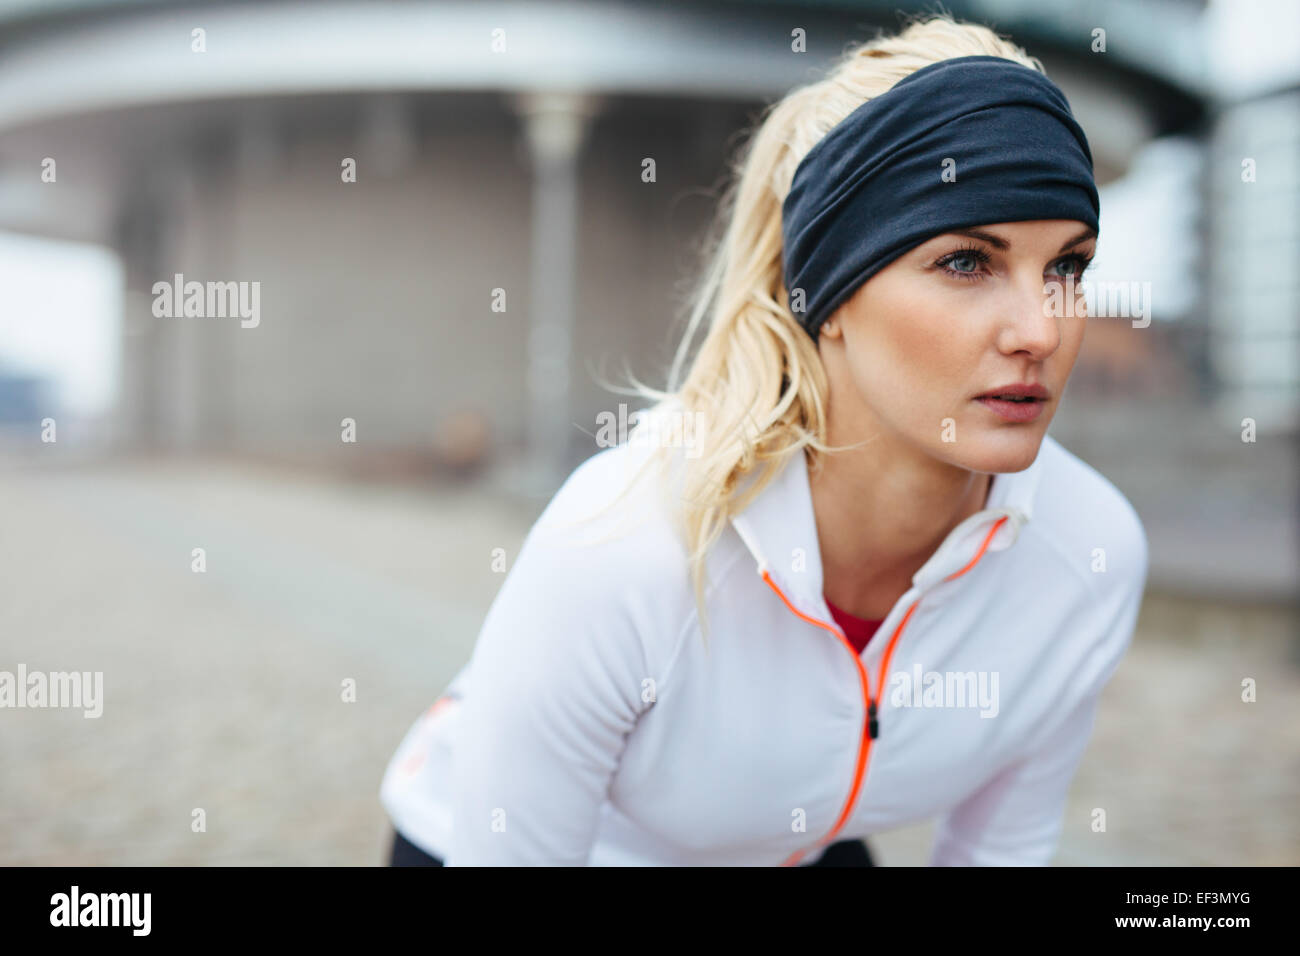 Porträt der jungen Sportlerin beugte sich über und wegsehen. Motiviert und konzentriert sich sportliche Frau vor einem Lauf. Stockfoto